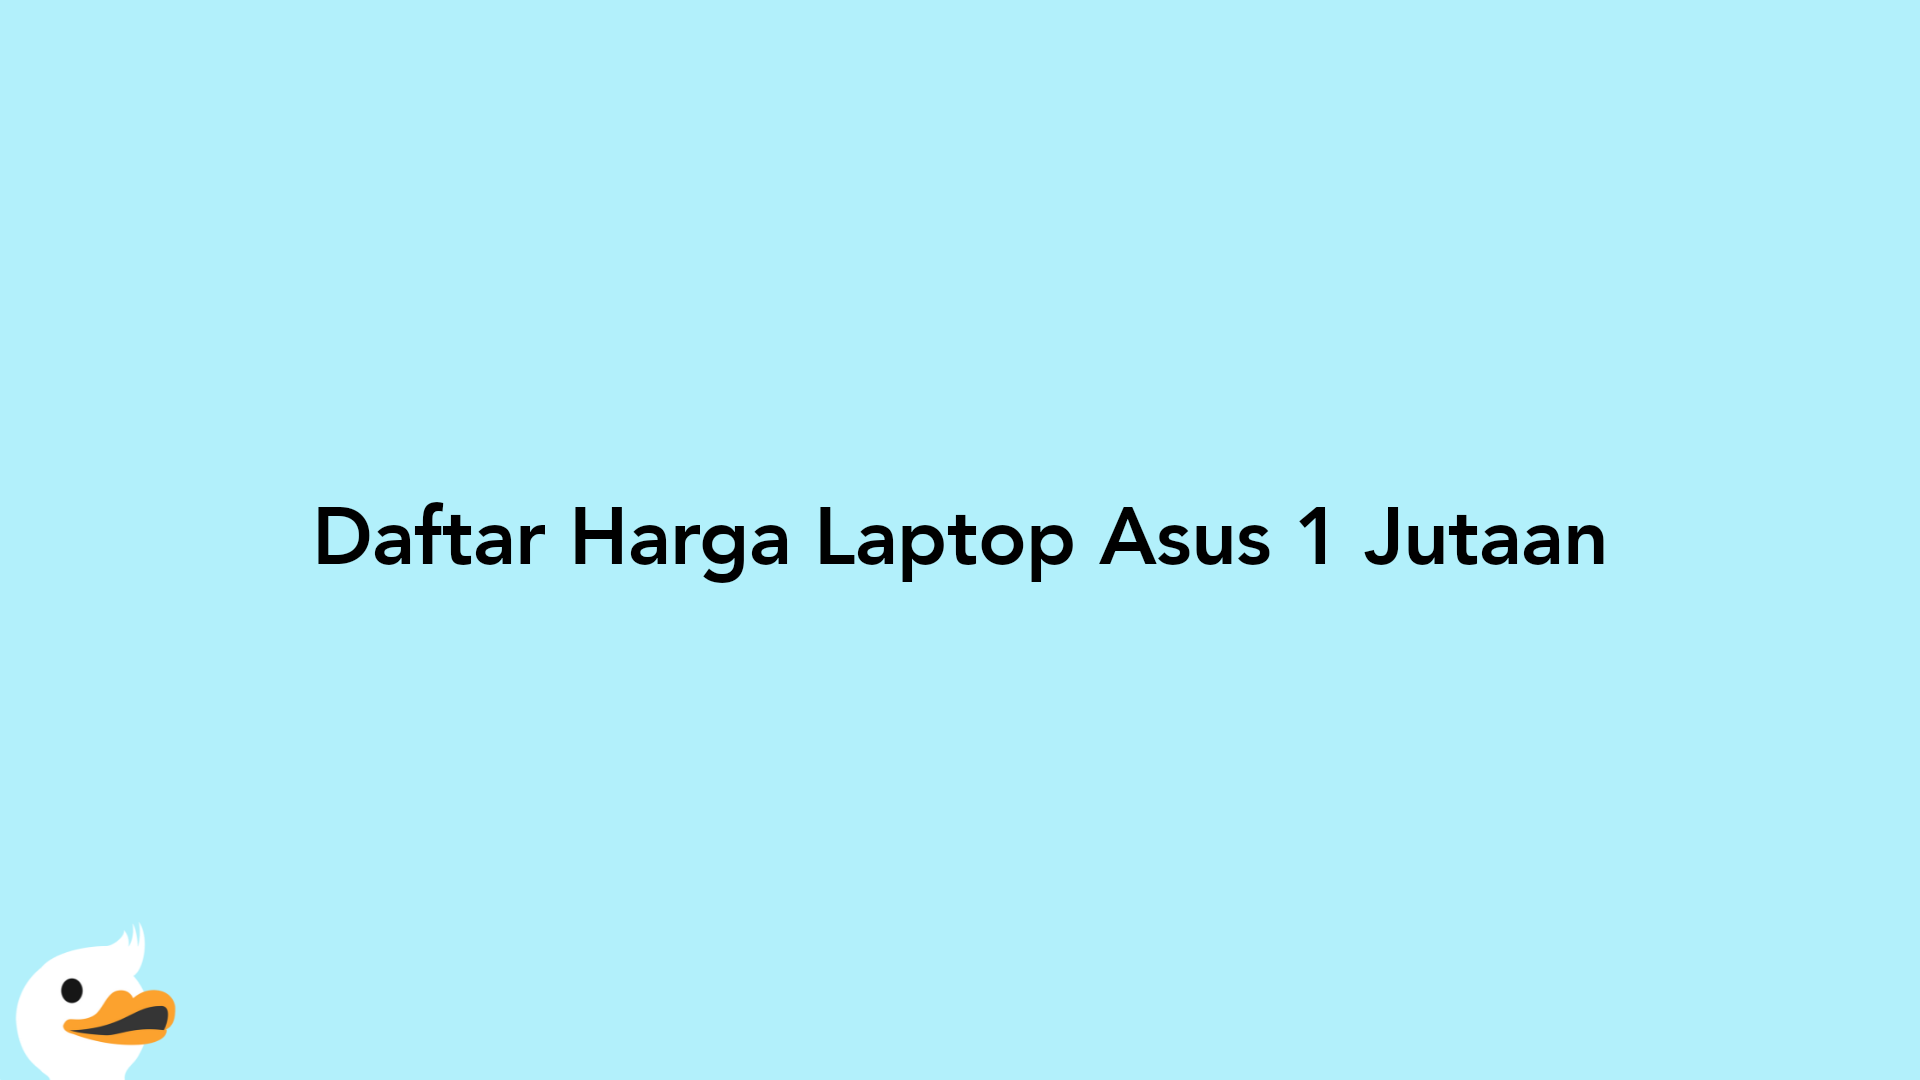 Daftar Harga Laptop Asus 1 Jutaan